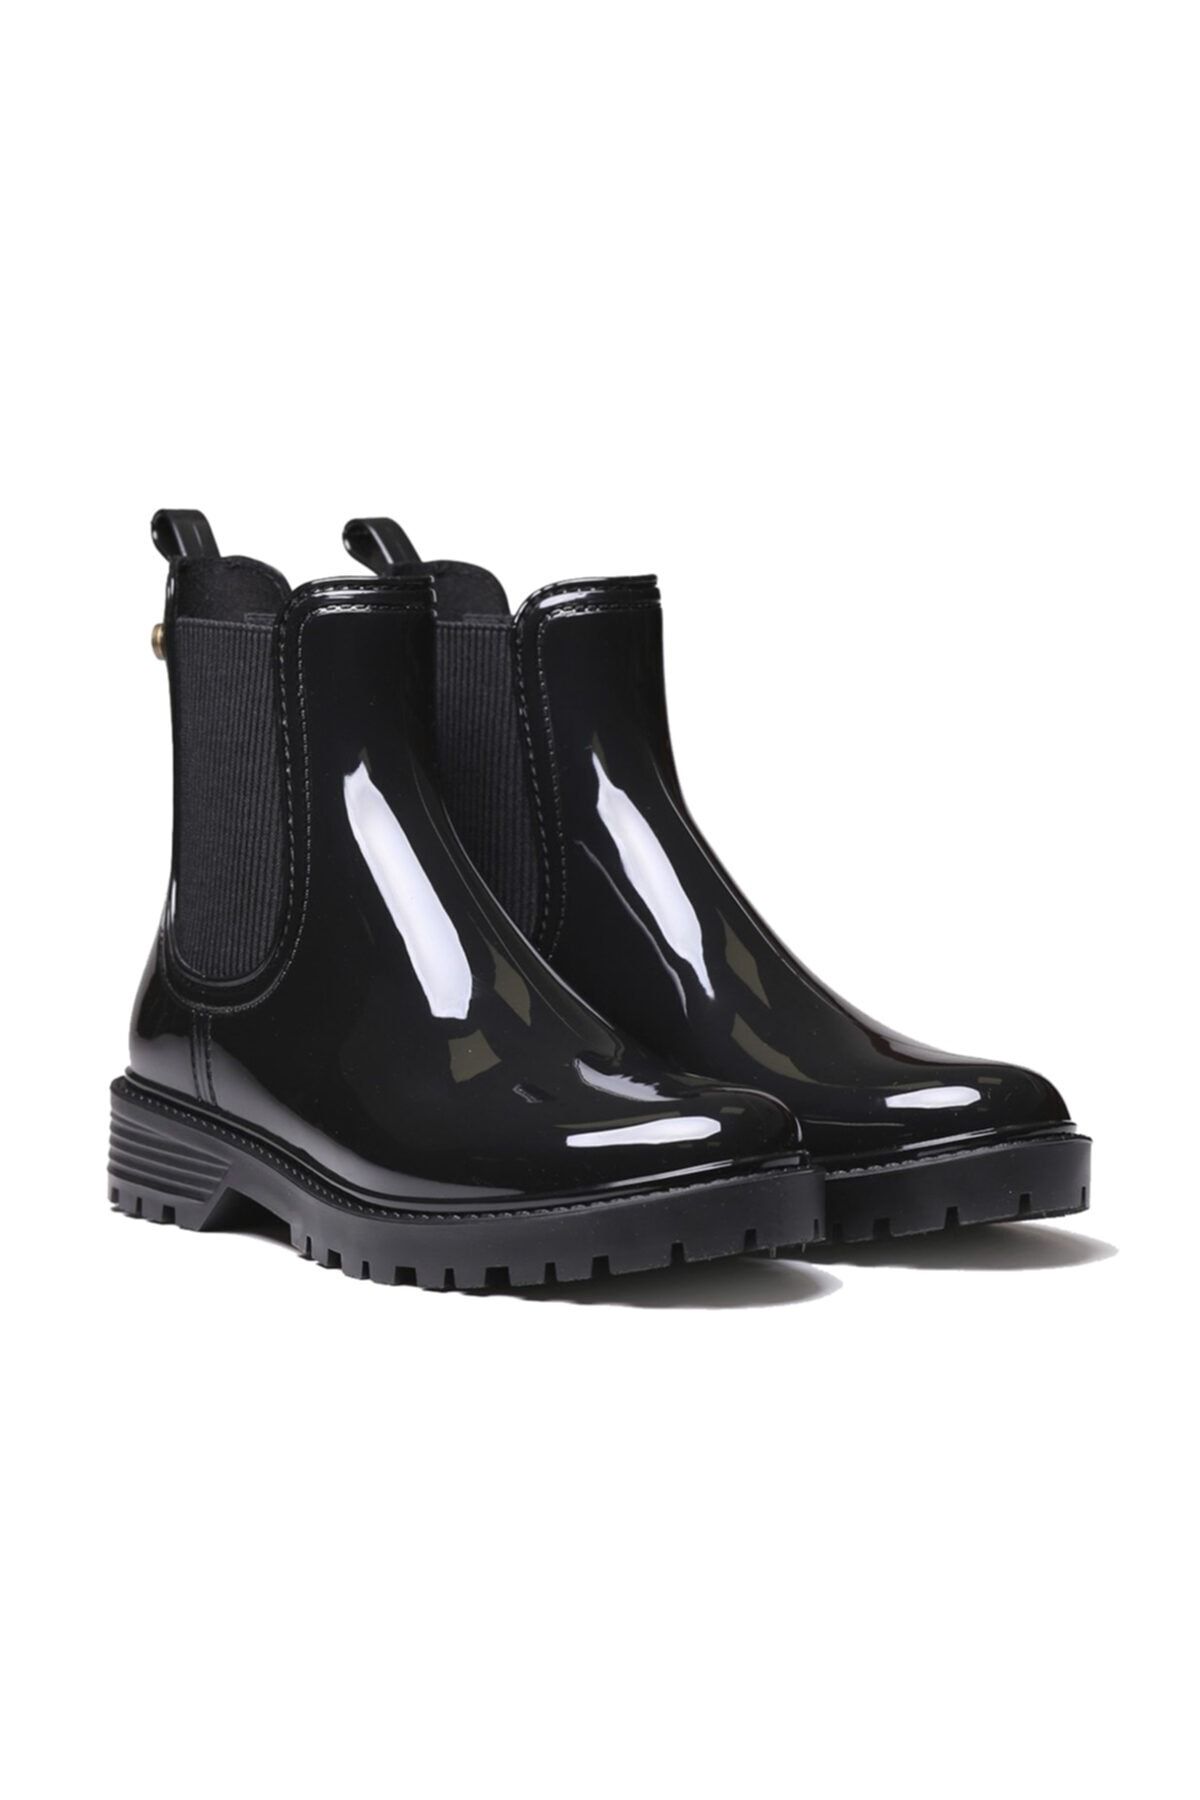 Toni Pons Kadın Yağmur Botu Cavan Ankle Boot Water Negre ( Black)